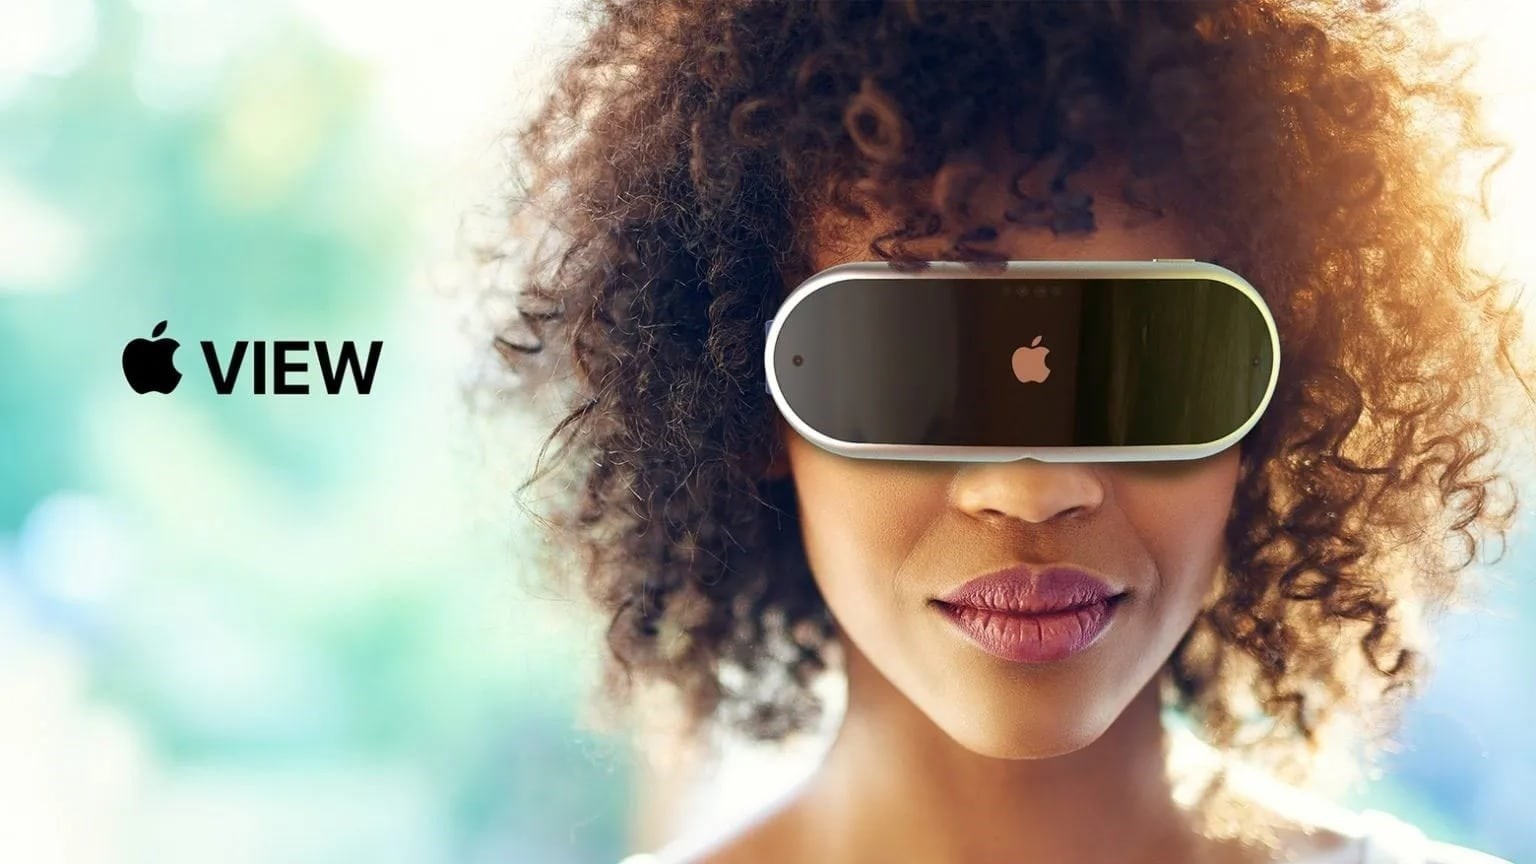 Apple CEO’su Tim Cook, AR/VR'ın geleceği hakkında konuştu